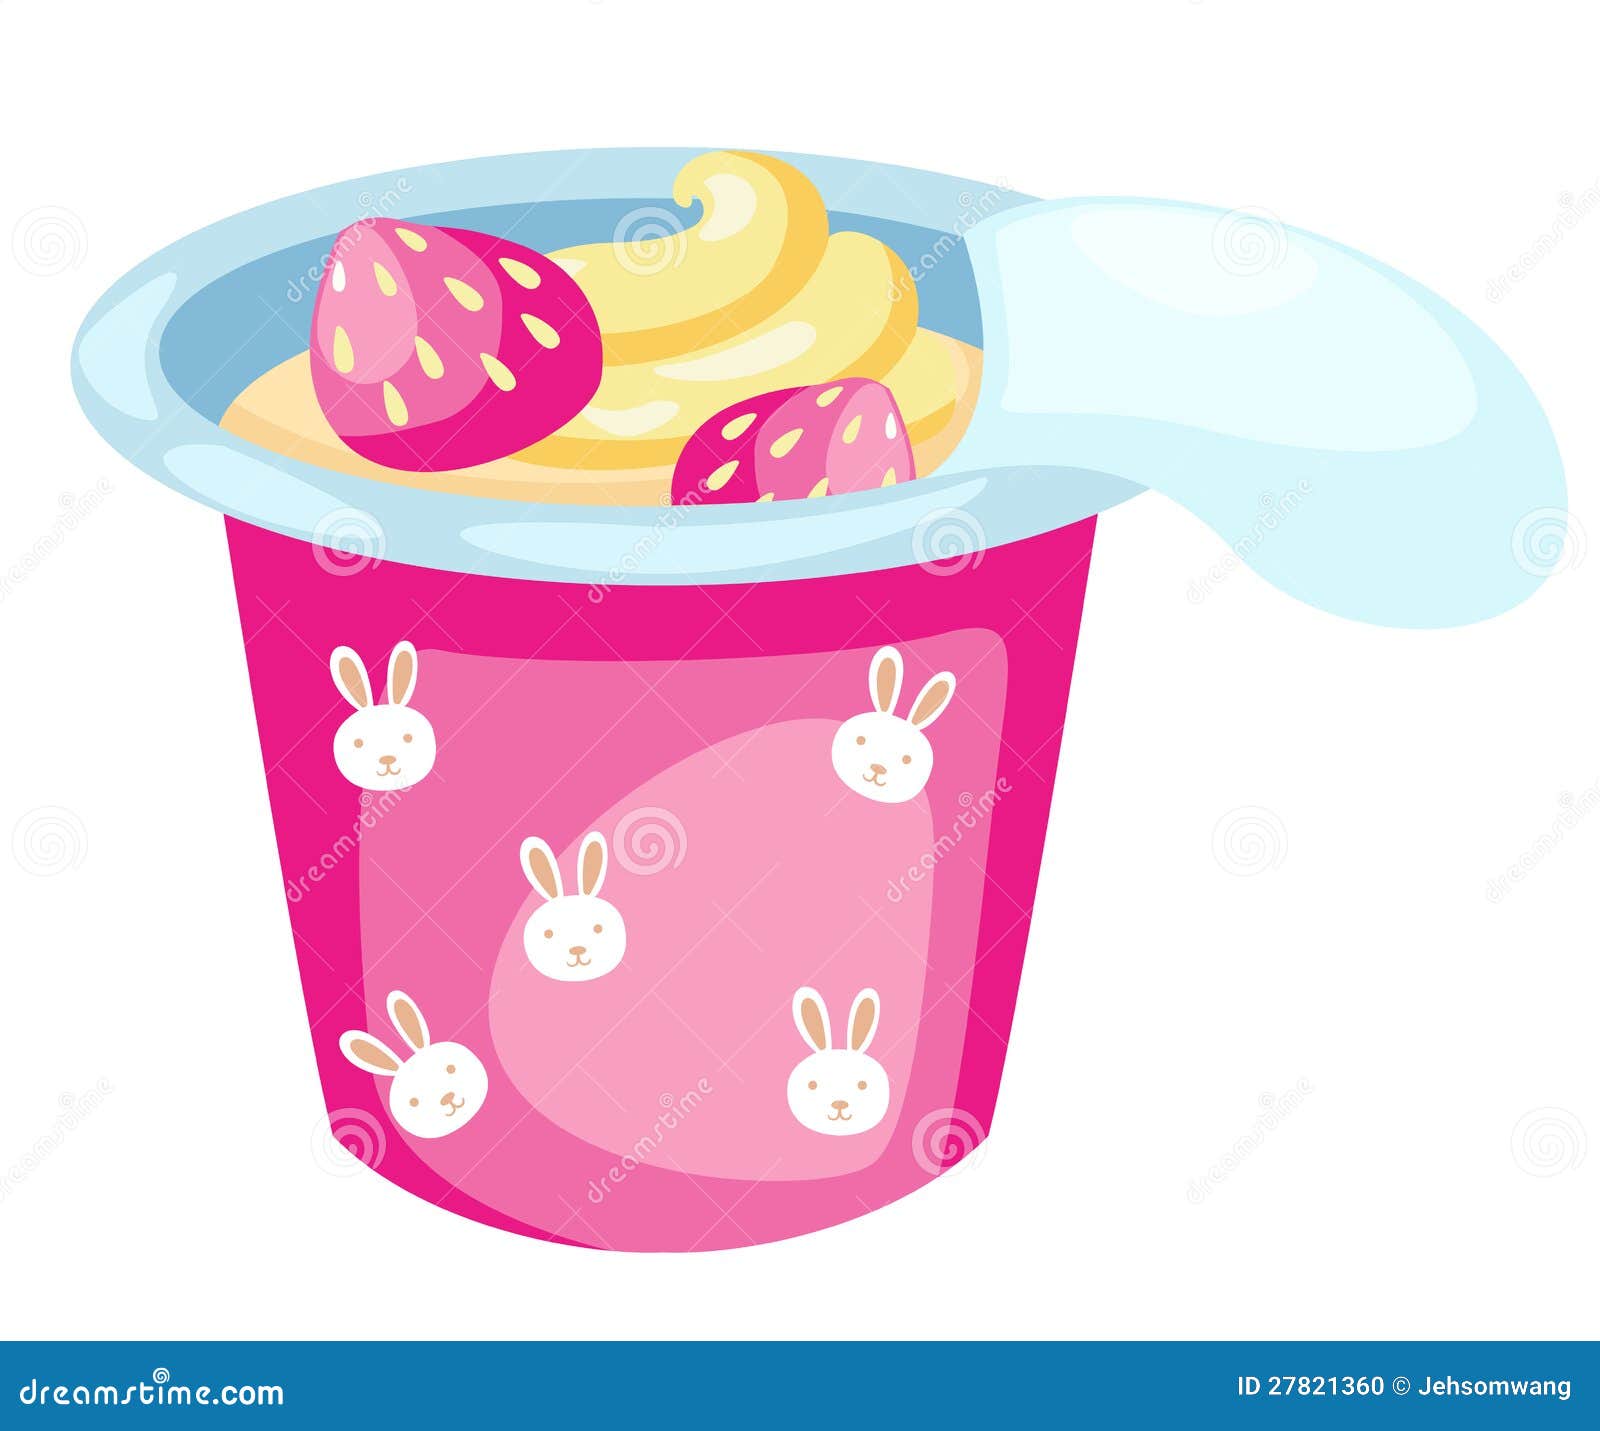 Strawberry Yogurt Ads Cartoon Vector | CartoonDealer.com #117438451